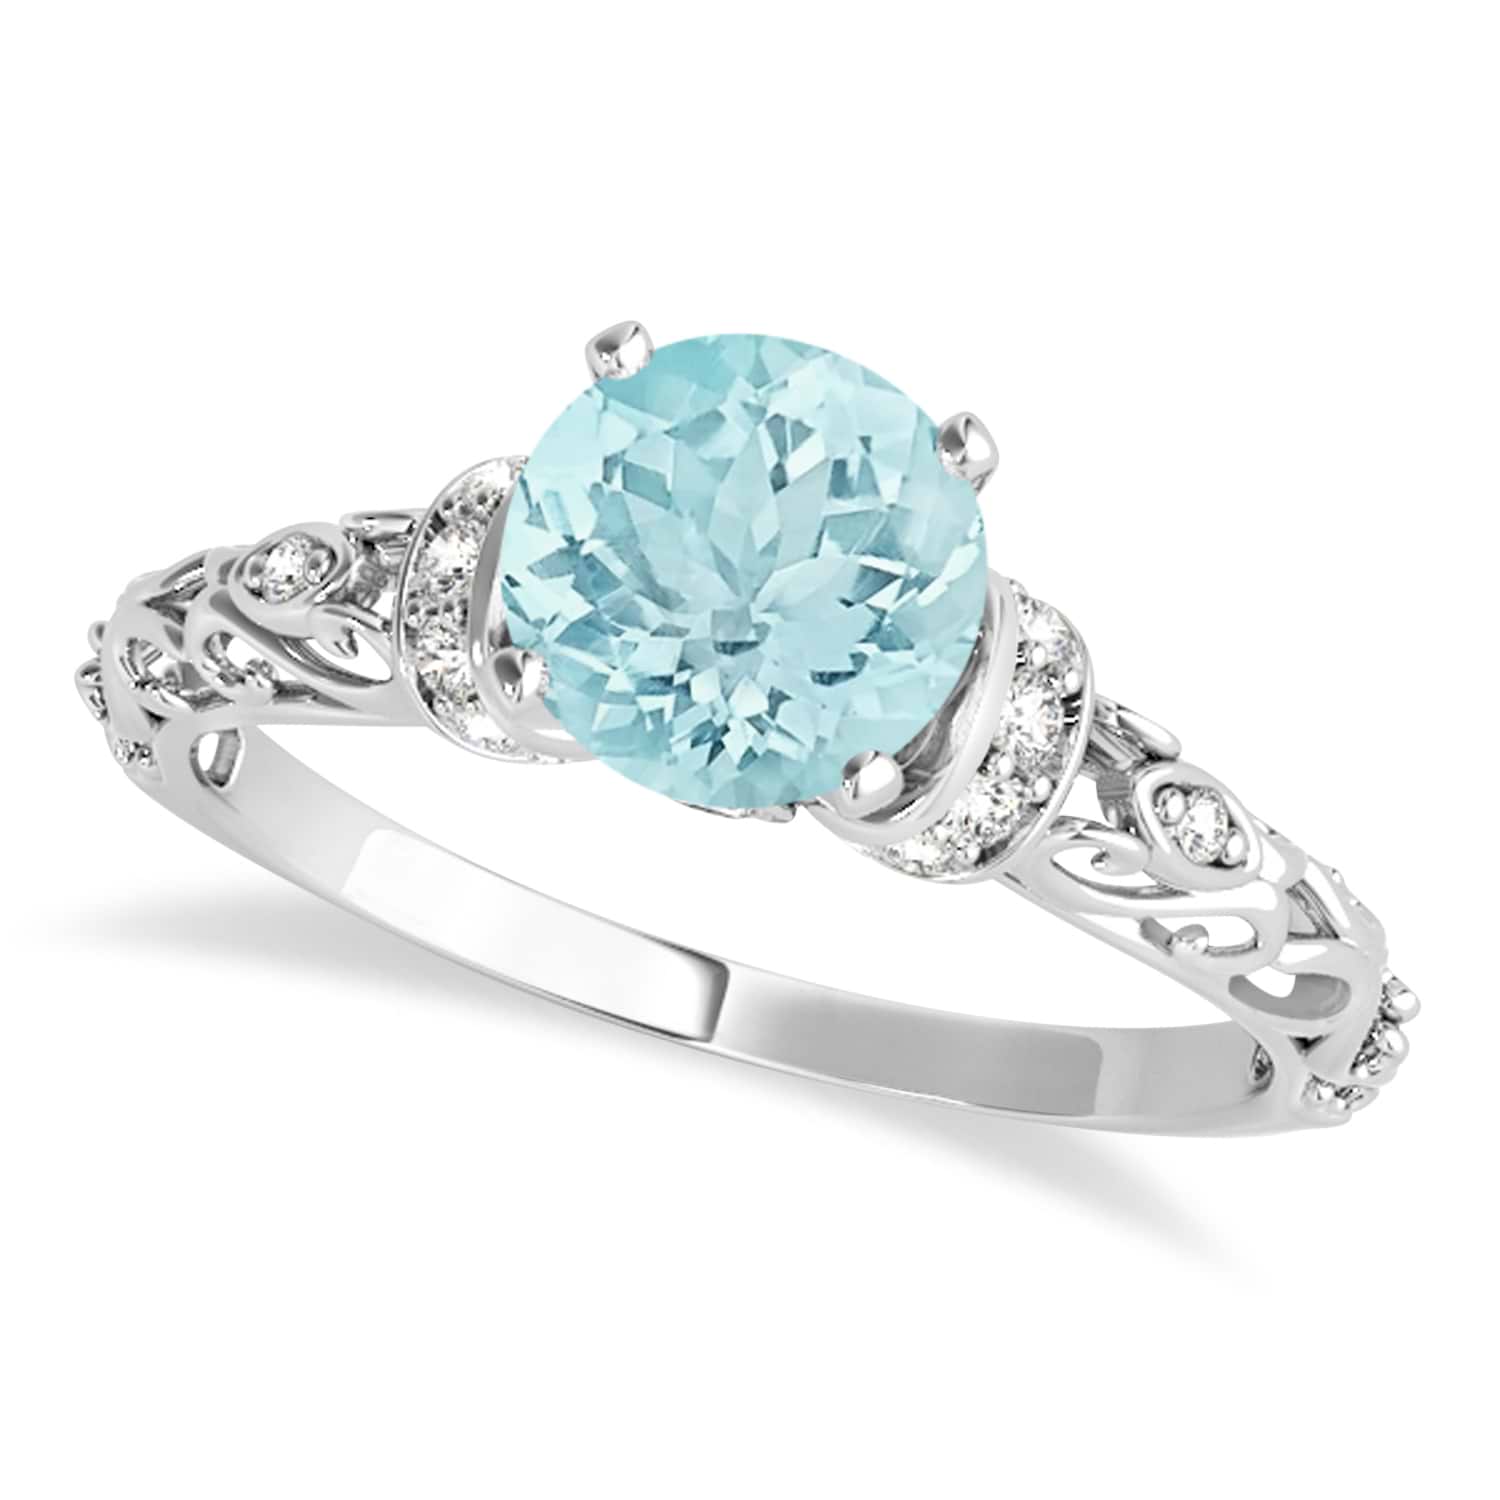 Aquamarine & Diamond Antique Style Engagement Ring 14k White Gold (0.87ct)